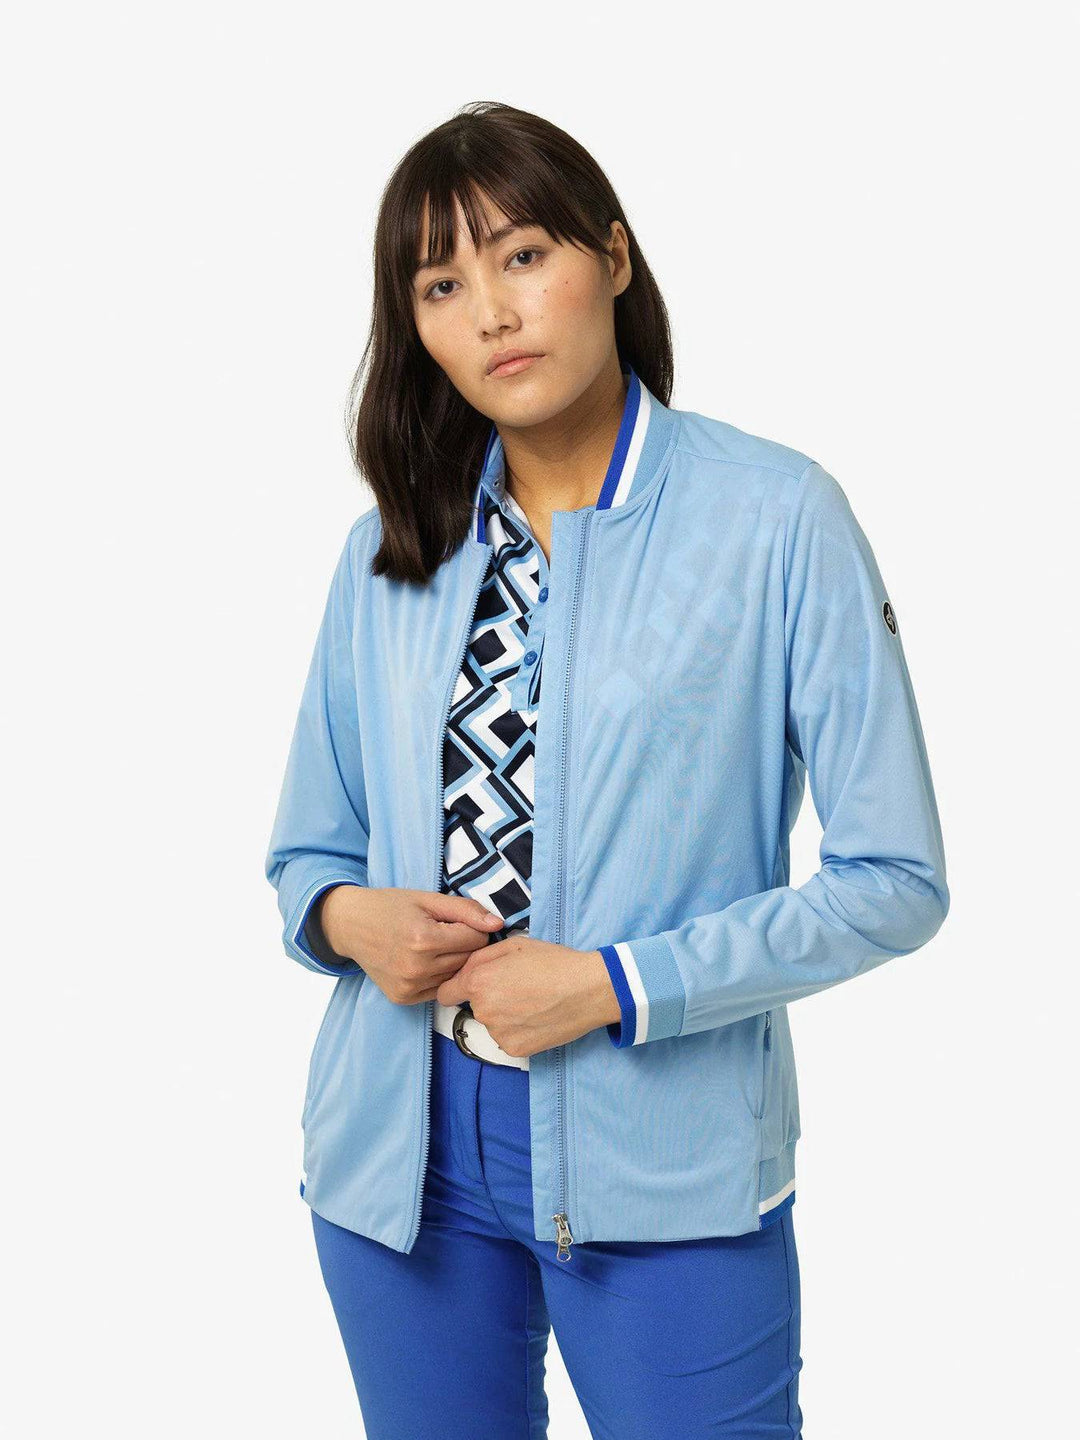 Cross Sportswear Womens Storm Jacket - BEL AIR BLUE